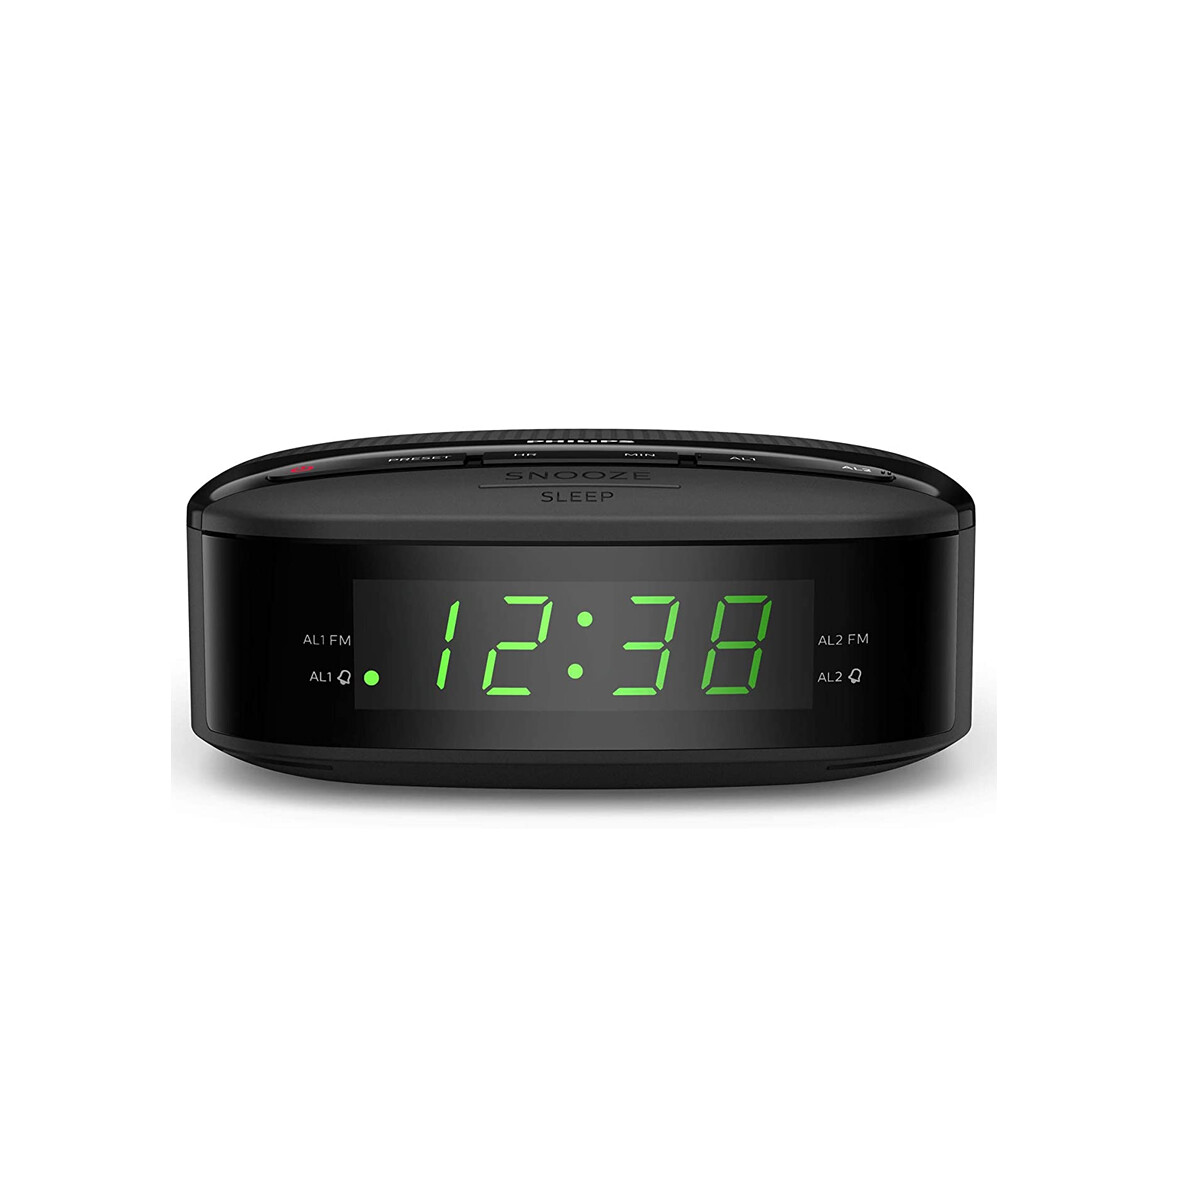 Radio Reloj Despertador Philips Doble Alarma Y Temporizador 